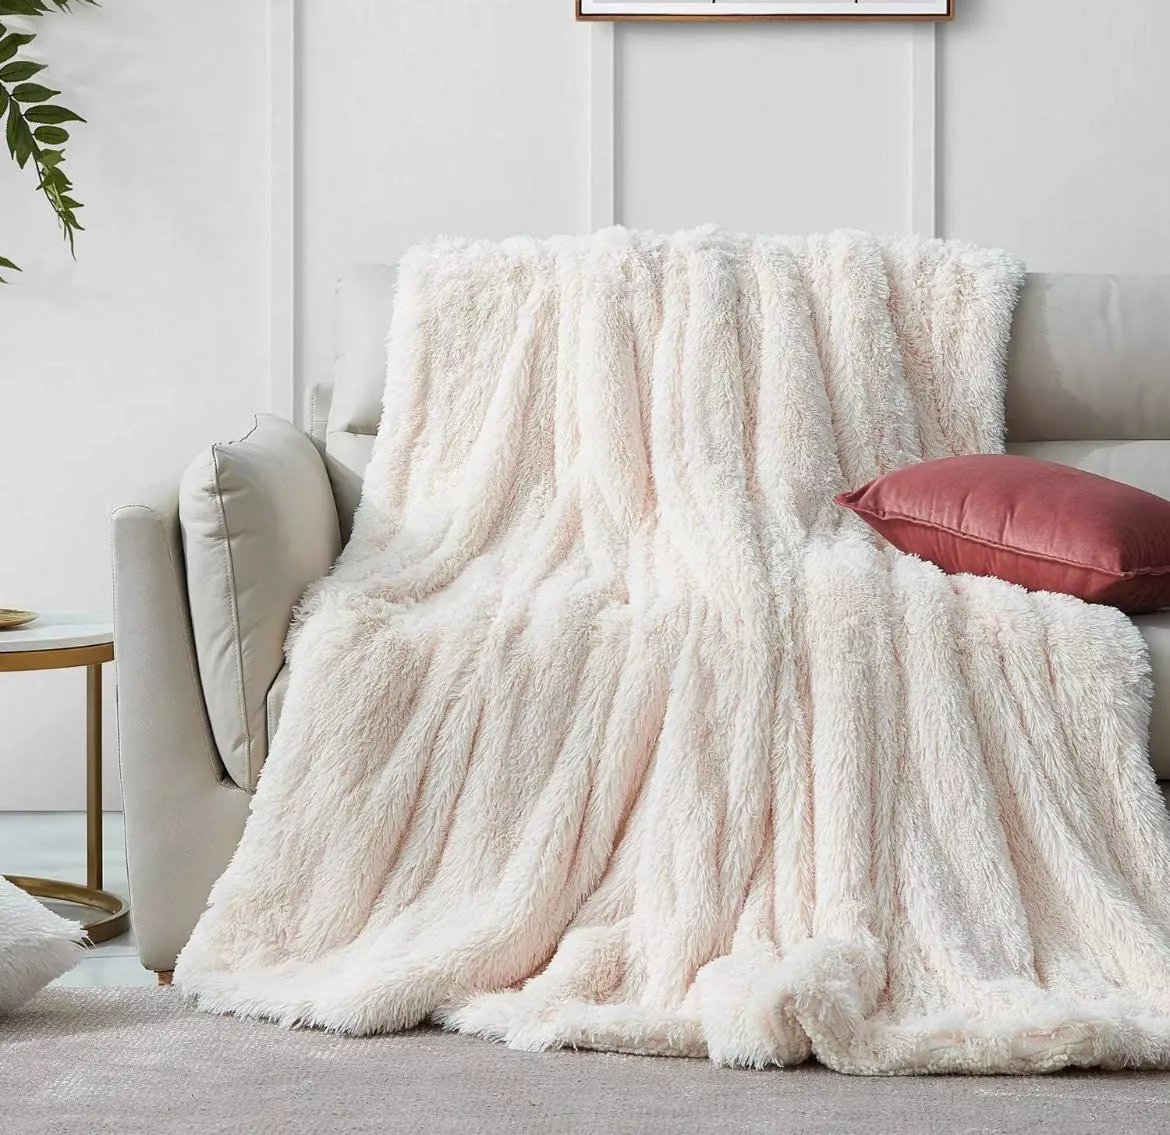 Primera imagen para búsqueda de manta sofa